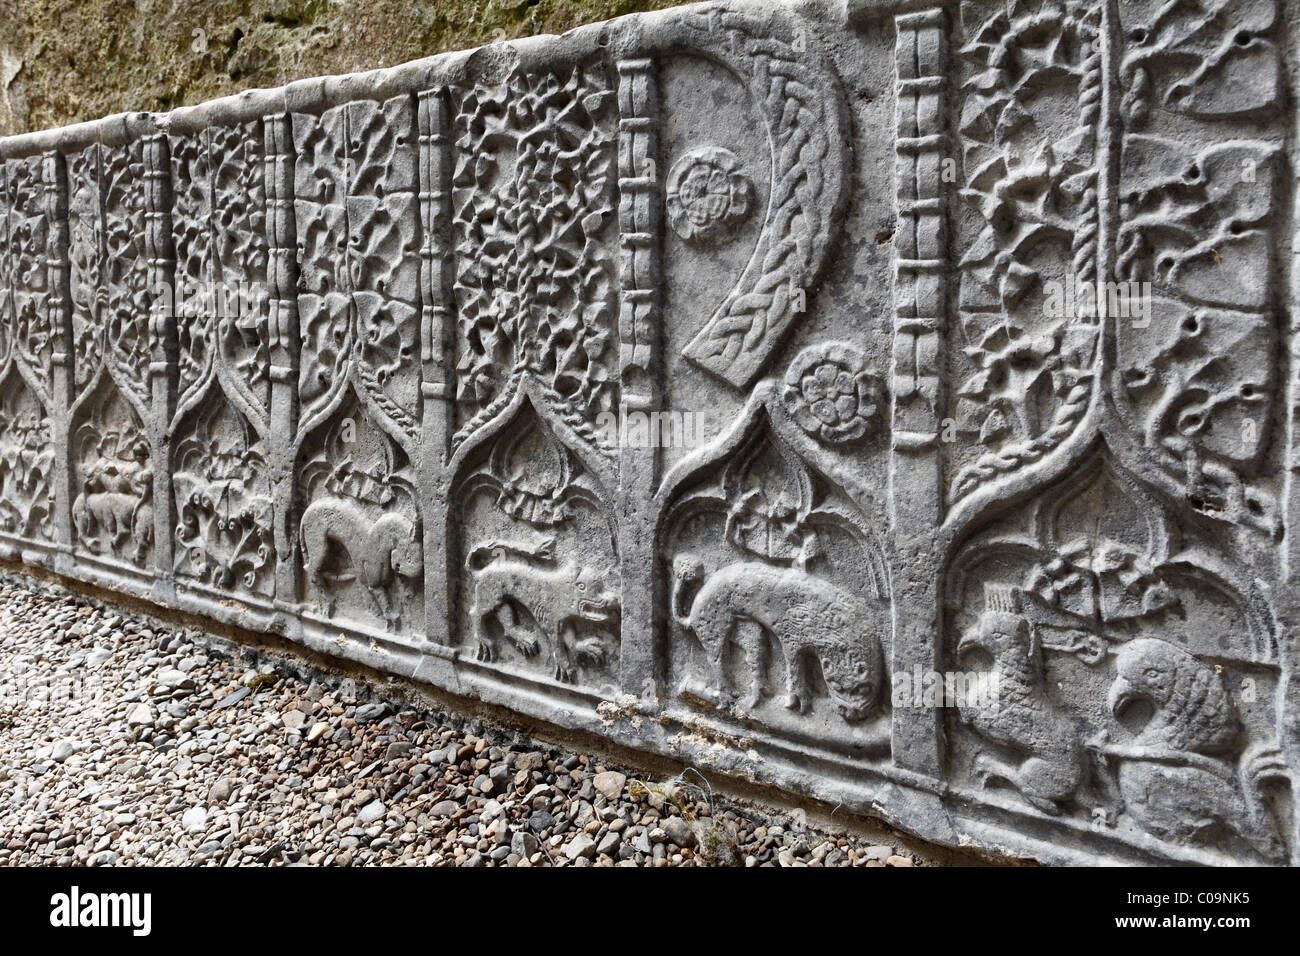 Rilievi in pietra e decorazioni su una lastra tombale, Rocca di Cashel, nella contea di Tipperary, Repubblica di Irlanda, Isole britanniche, Europa Foto Stock